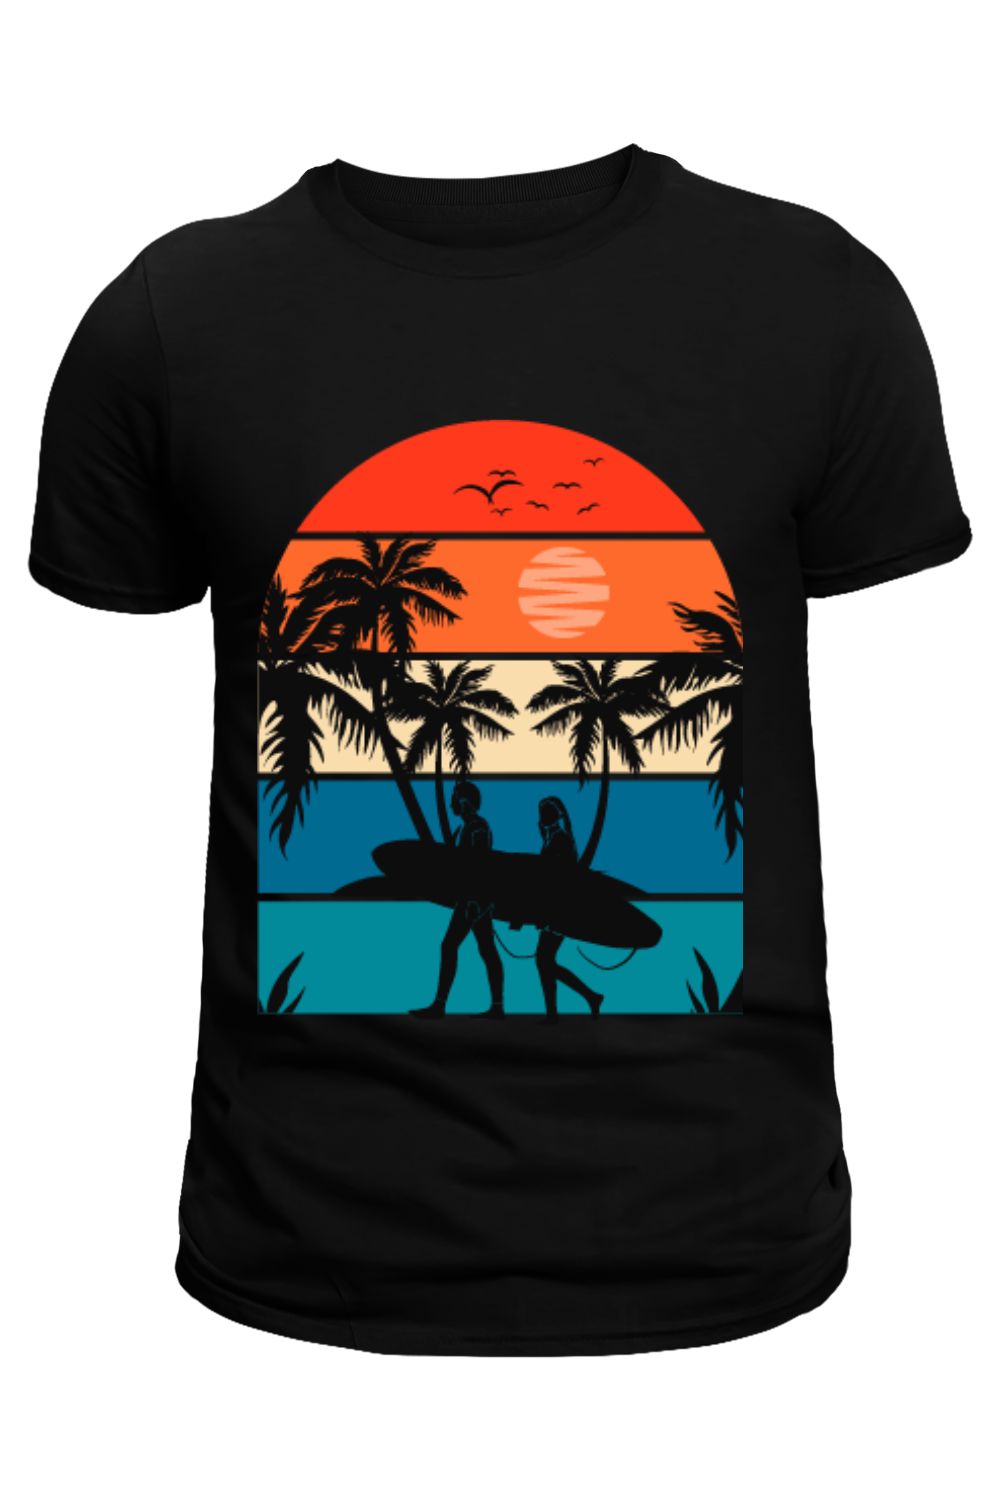 summer Beautiful T shirt design pinterest preview image.